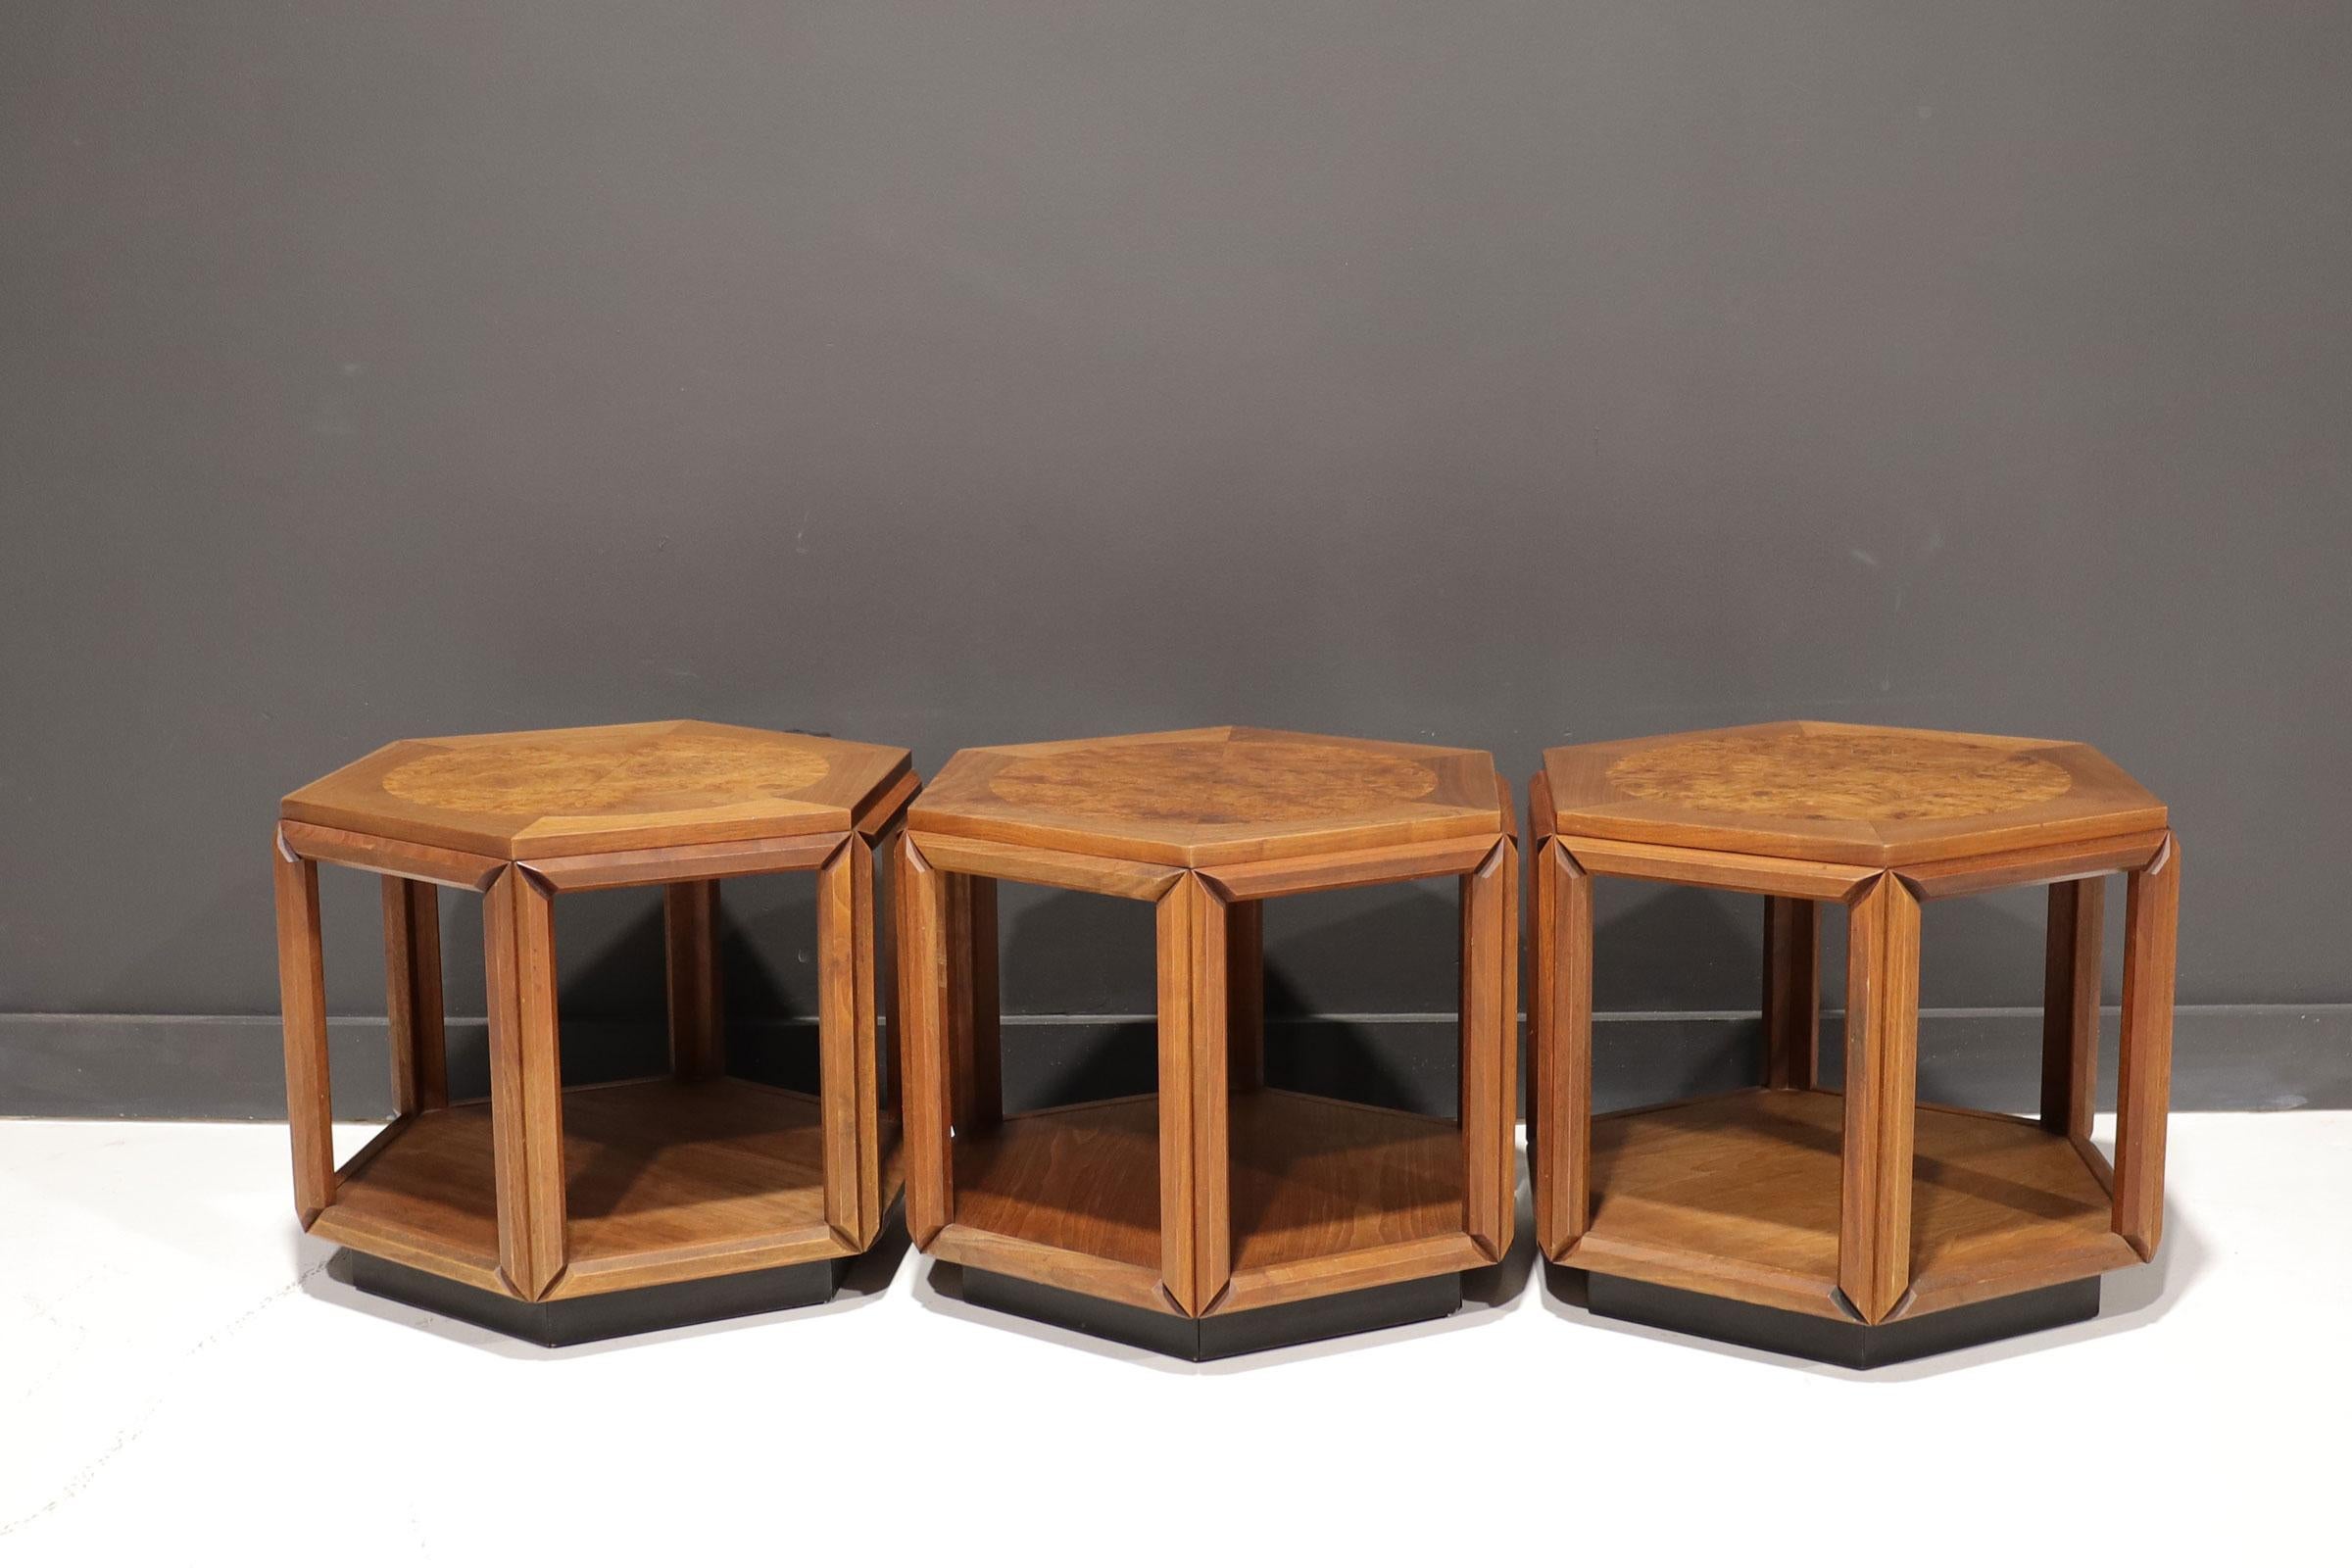 Ensemble de trois tables d'appoint de forme hexagonale conçues par John Keal pour Brown Saltman dans les années 1970.
Construit en noyer avec un cercle en bois de ronce sur le dessus.
En belle condition vintage avec une usure mineure conforme à